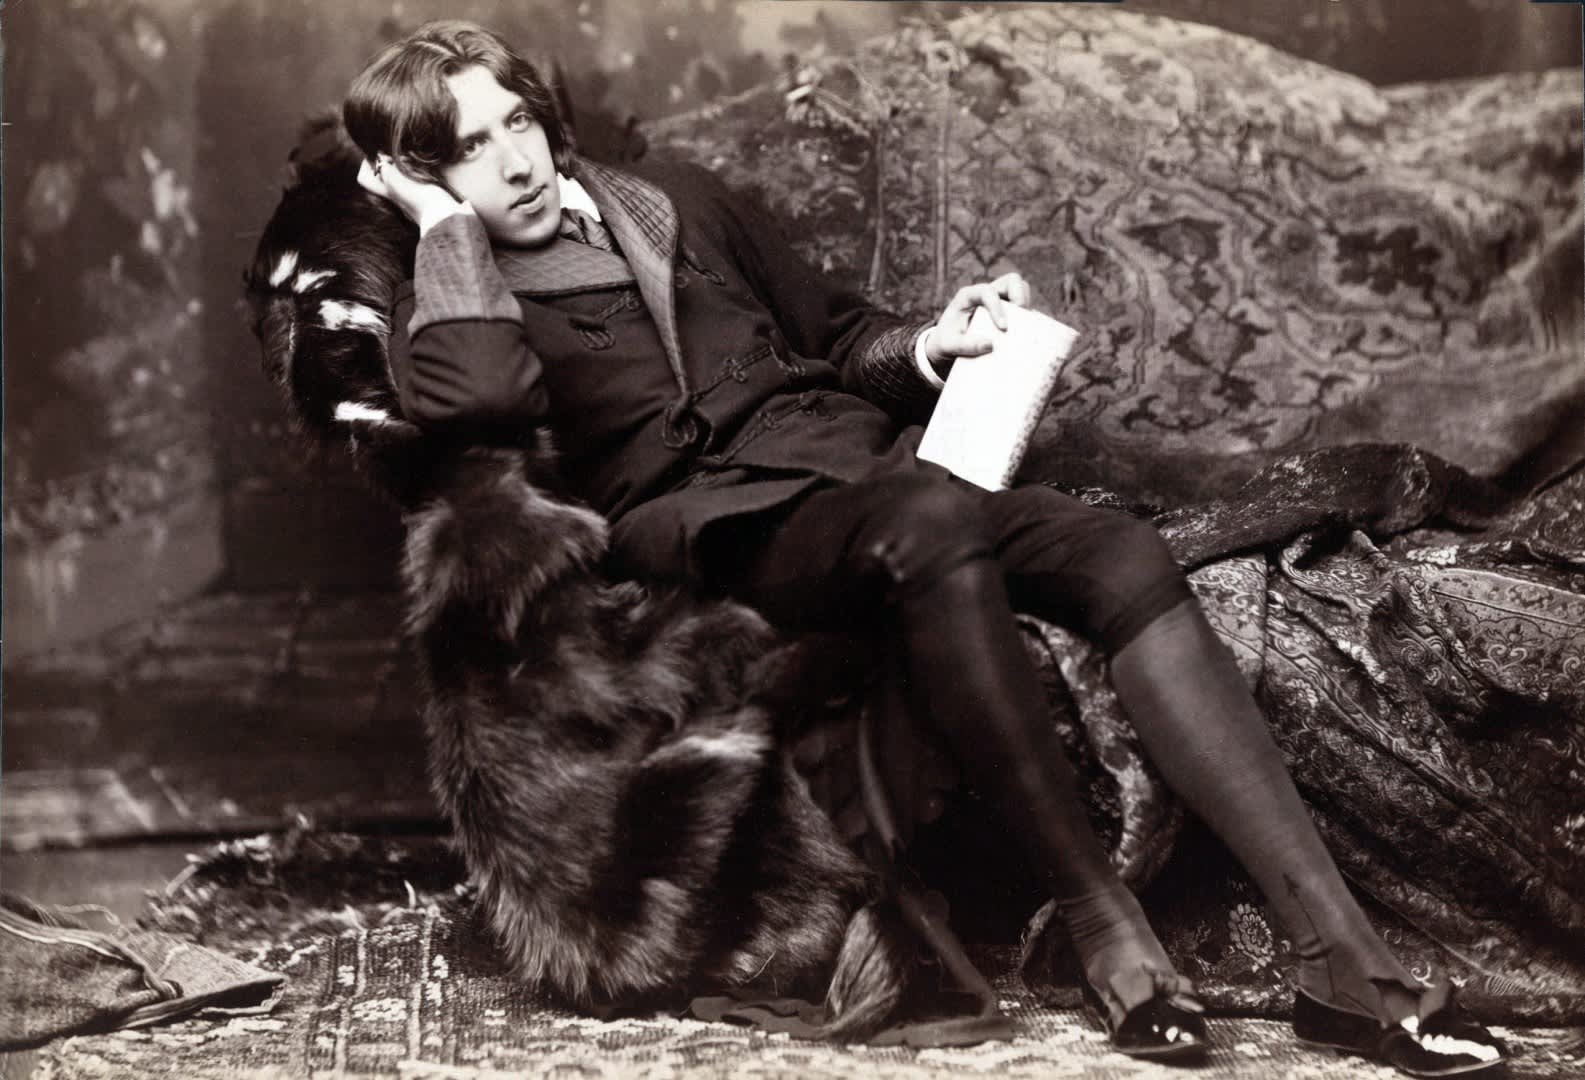 The True Knowledge by Oscar Wilde